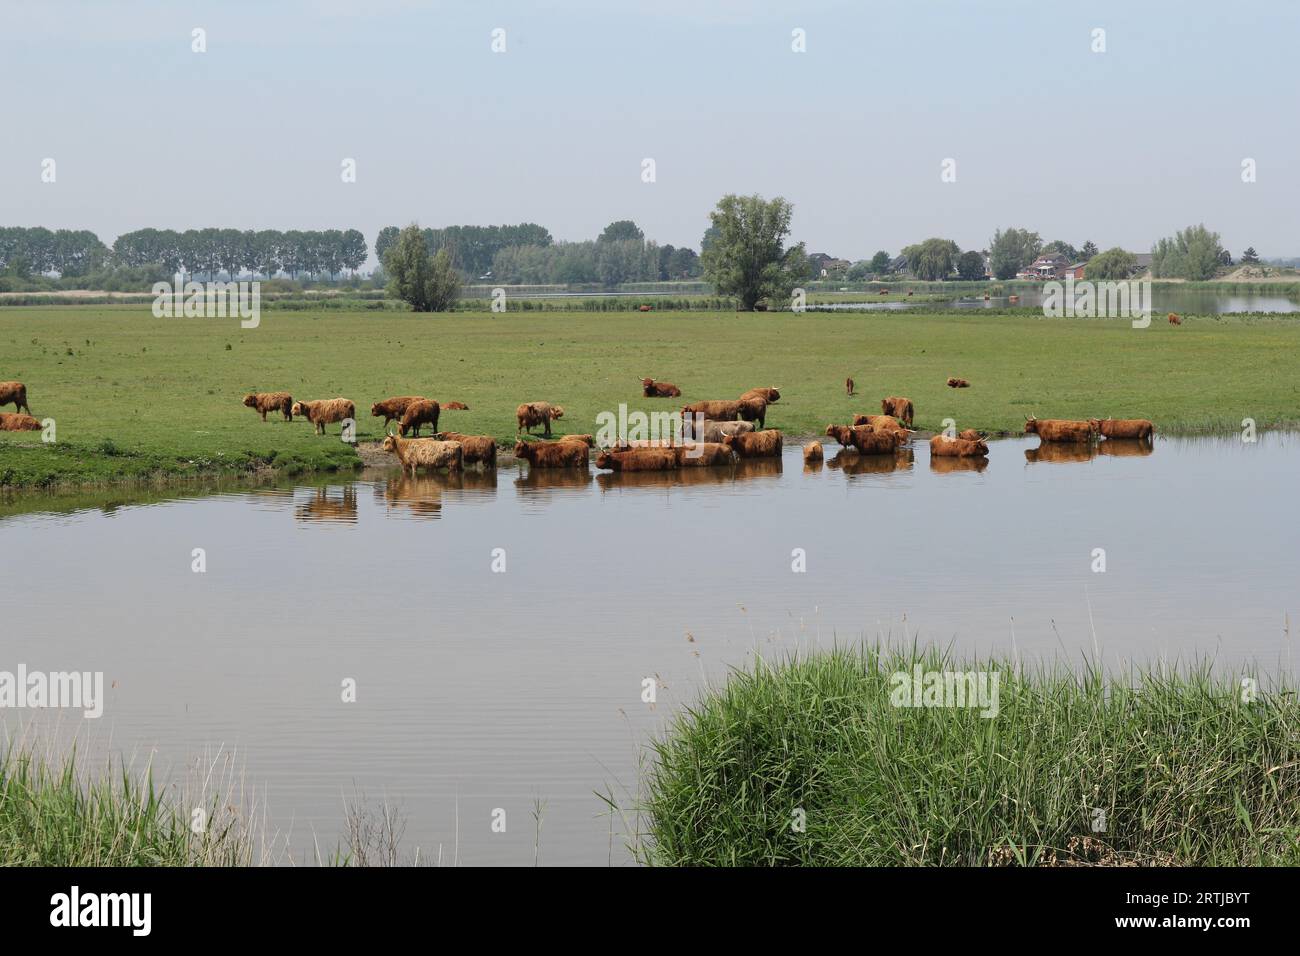 un troupeau de vaches d'altitude brunes se baignent dans l'eau le long d'un pré vert lors d'une journée chaude au printemps en hollande Banque D'Images